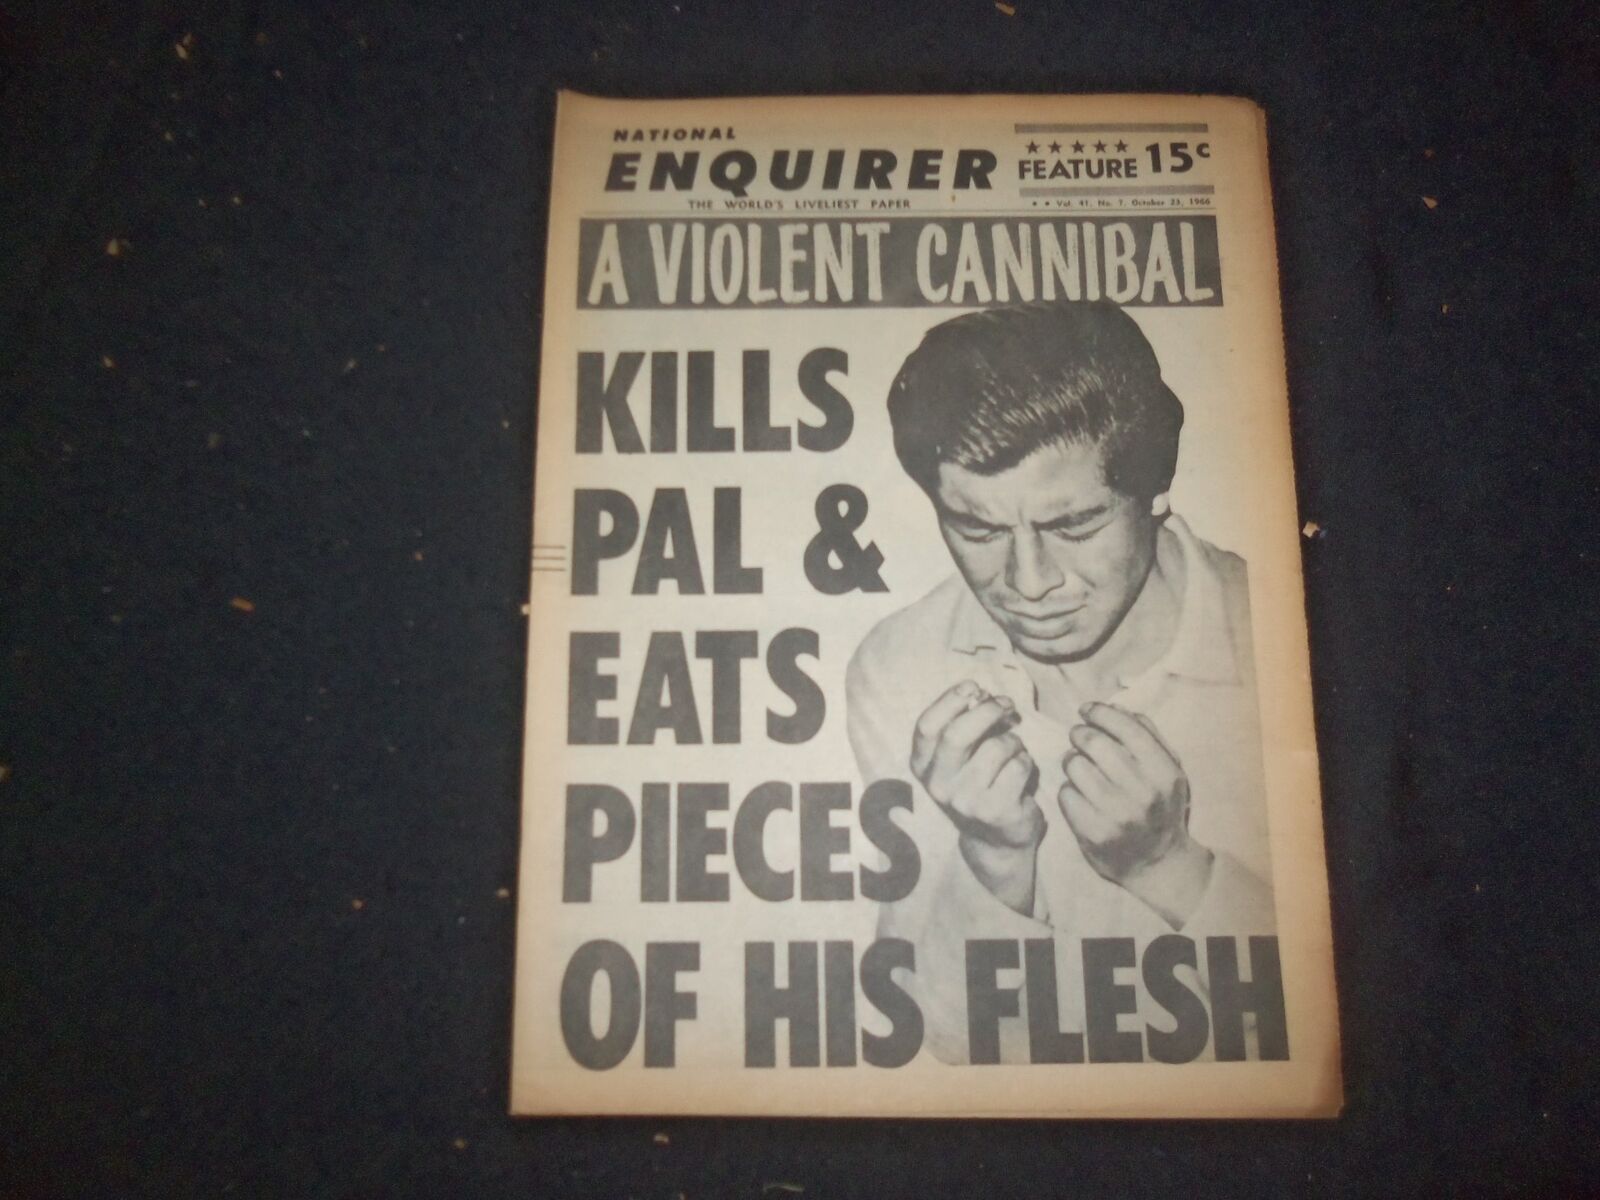 1966 OCT 23 NATIONAL ENQUIRER NEWSPAPER -KILLS PAL & EATS FLESH PIECES - NP 7425